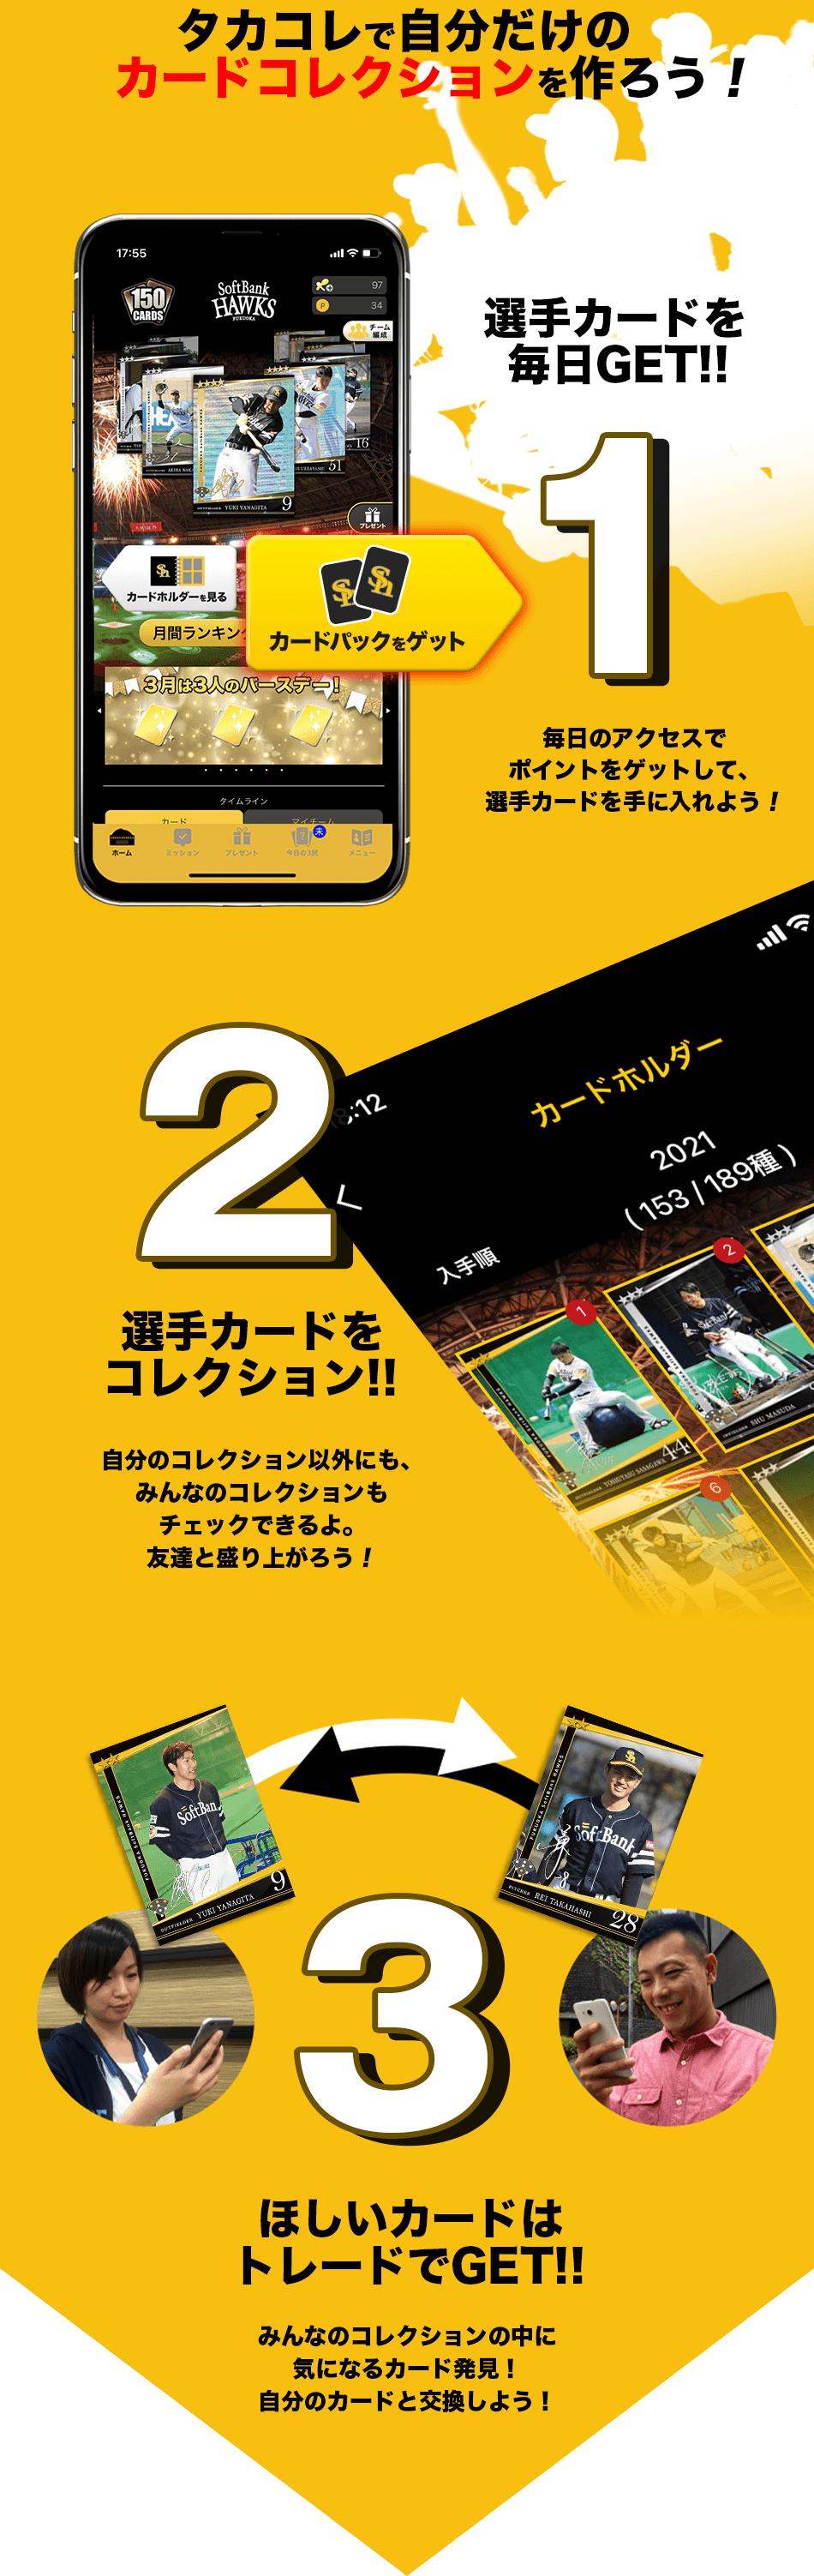 ホークスカードコレクションアプリ 福岡ソフトバンクホークス公式サイト